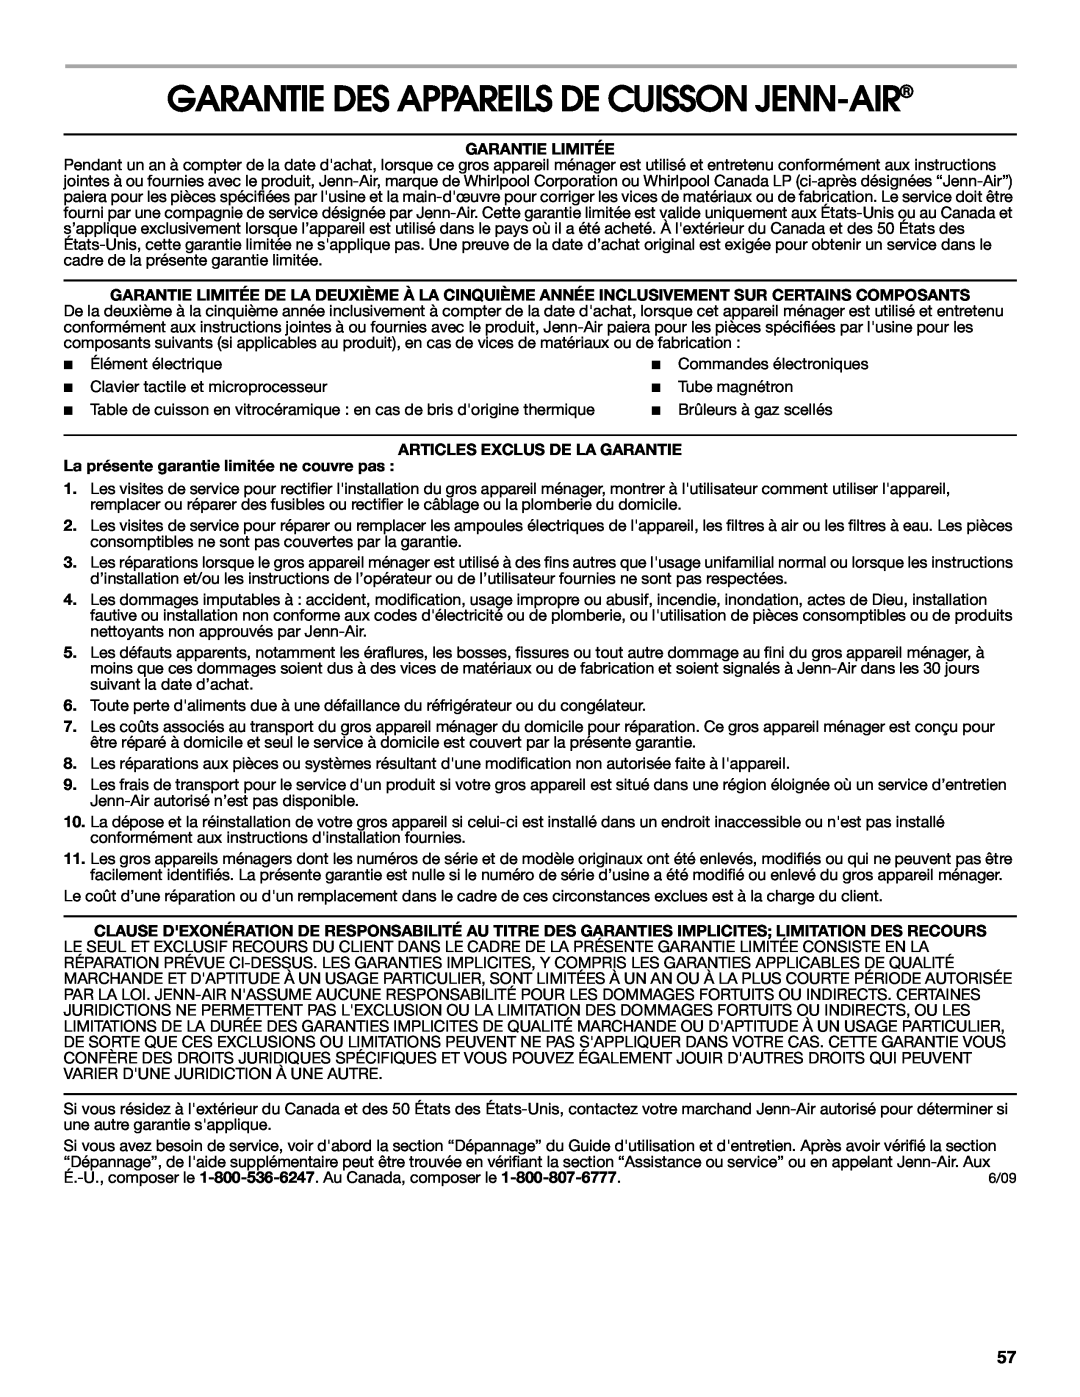 Jenn-Air JJW2330, JJW2527 Garantie Des Appareils De Cuisson Jenn-Air, Garantie Limitée, Articles Exclus De La Garantie 